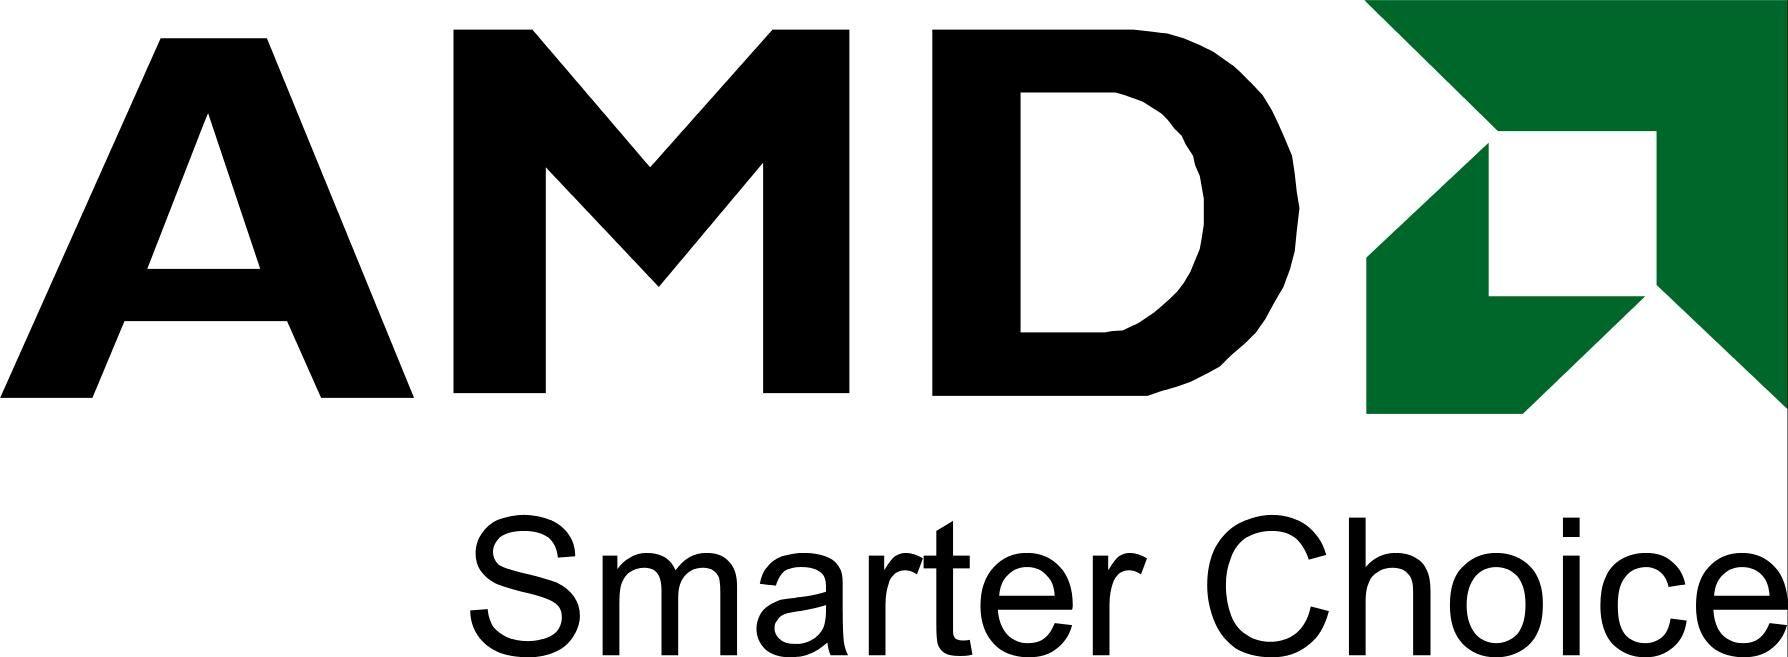 AMD Logo - AMD's CEO Believes in Winning the UltraBook Bet